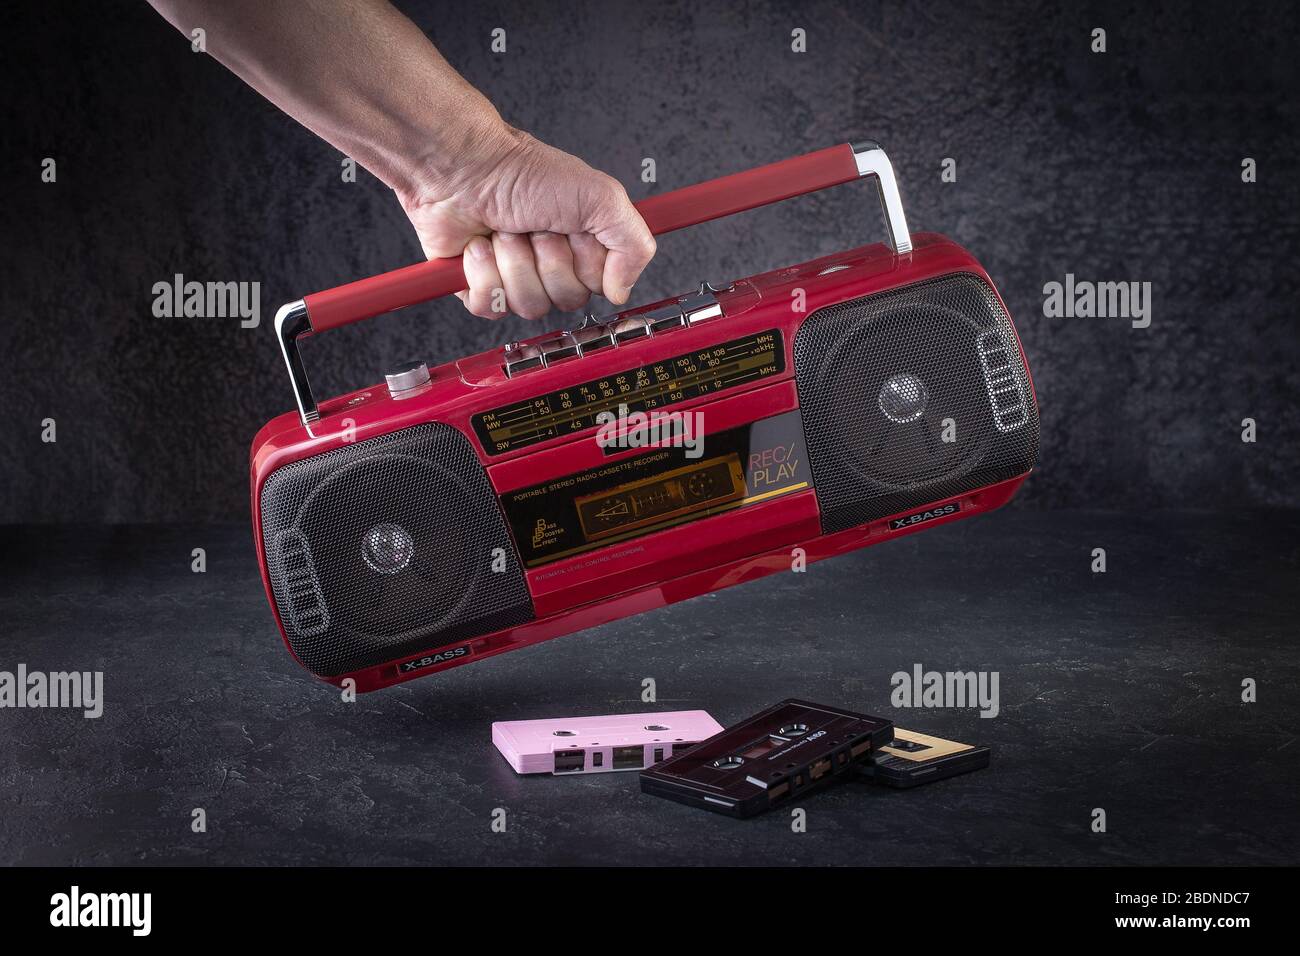 Radiocasete clásico sobre fondo oscuro. Radio roja retro y reproductor de casetes. Tecnología retro Foto de stock